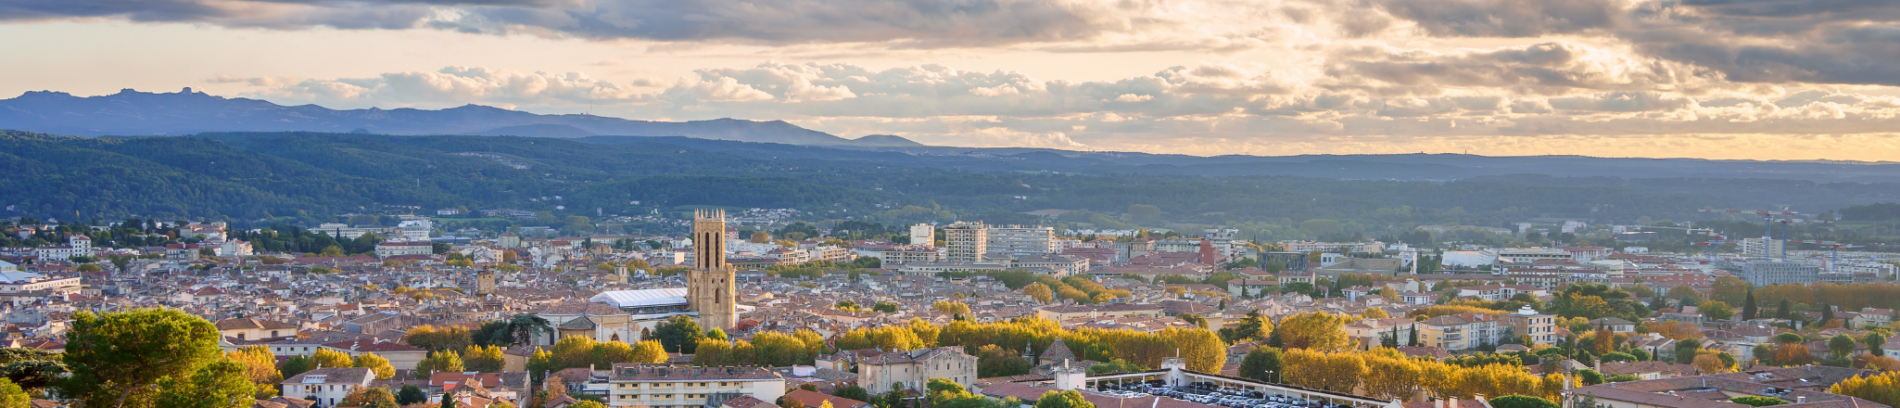 Slide Vue panoramique sur la ville d'Aix-en-Provence